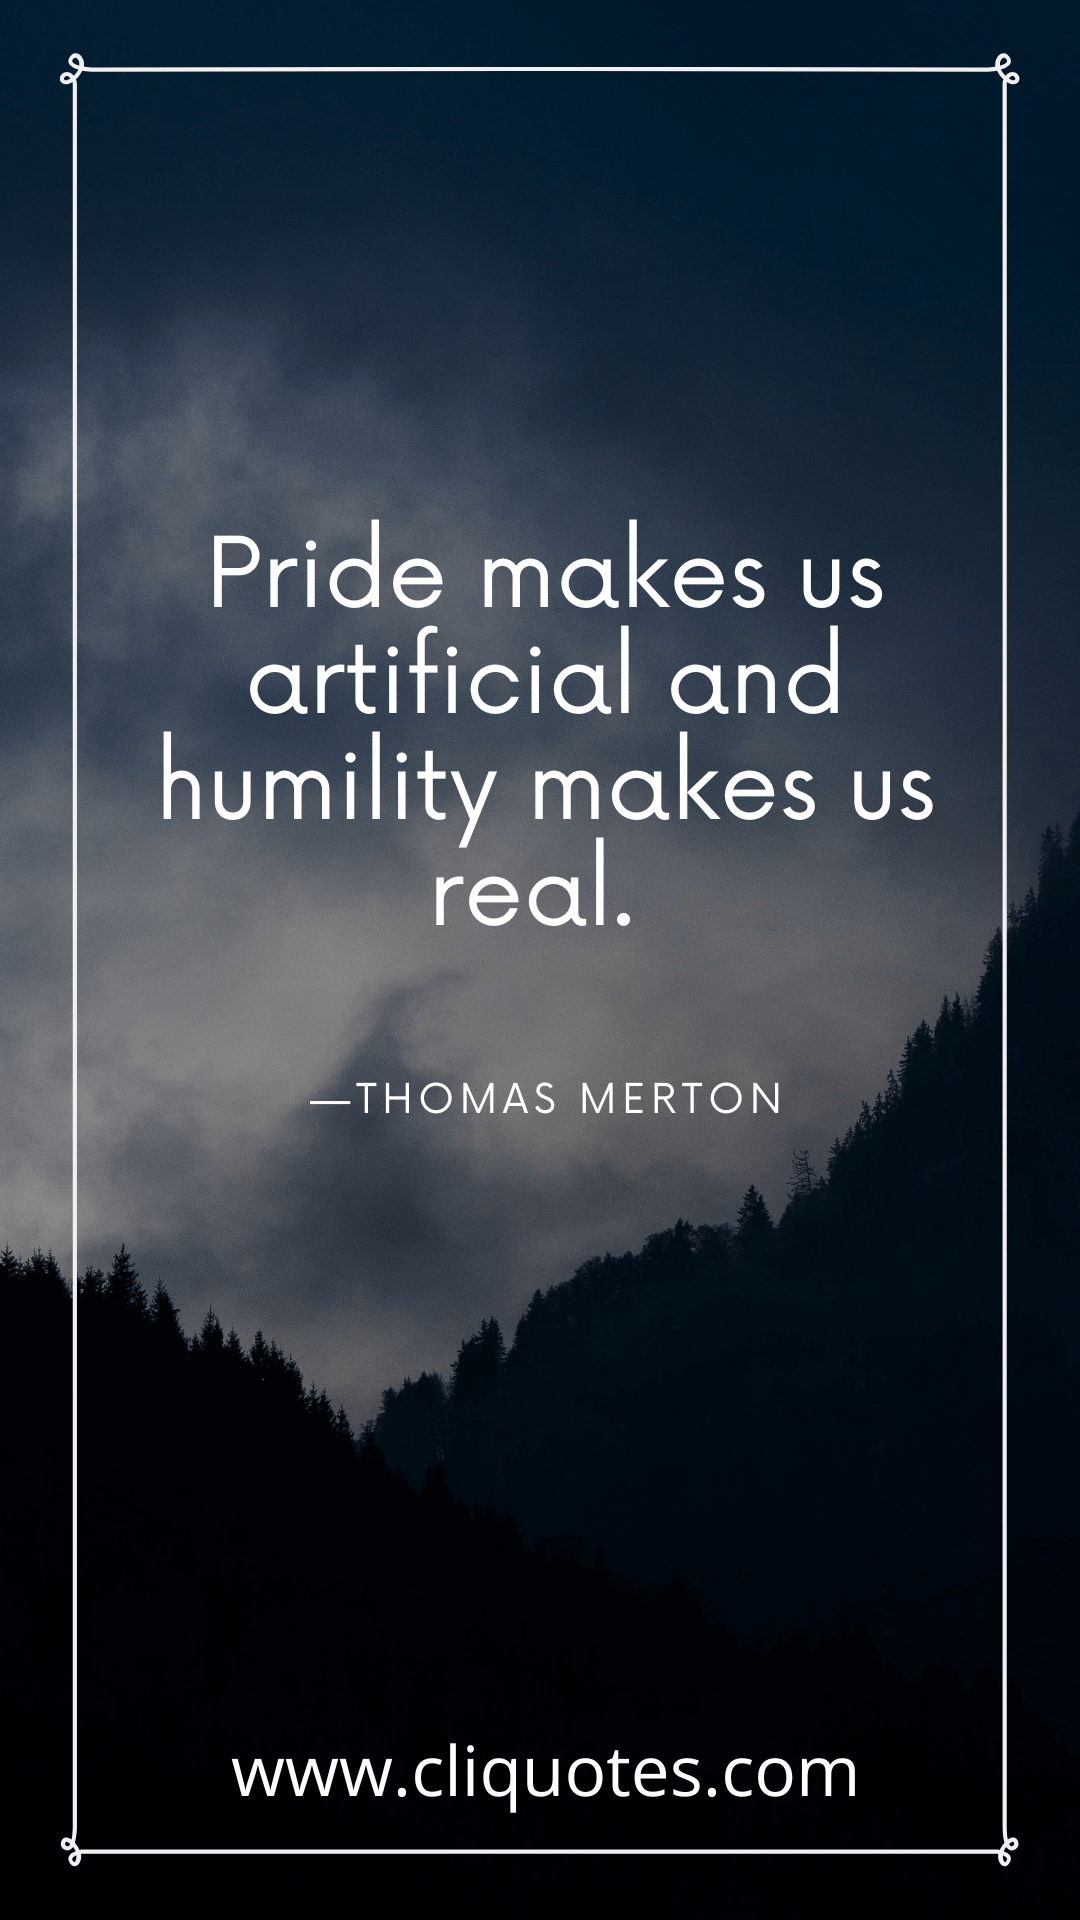 Pride makes us artificial and humility makes us real. —THOMAS MERTON